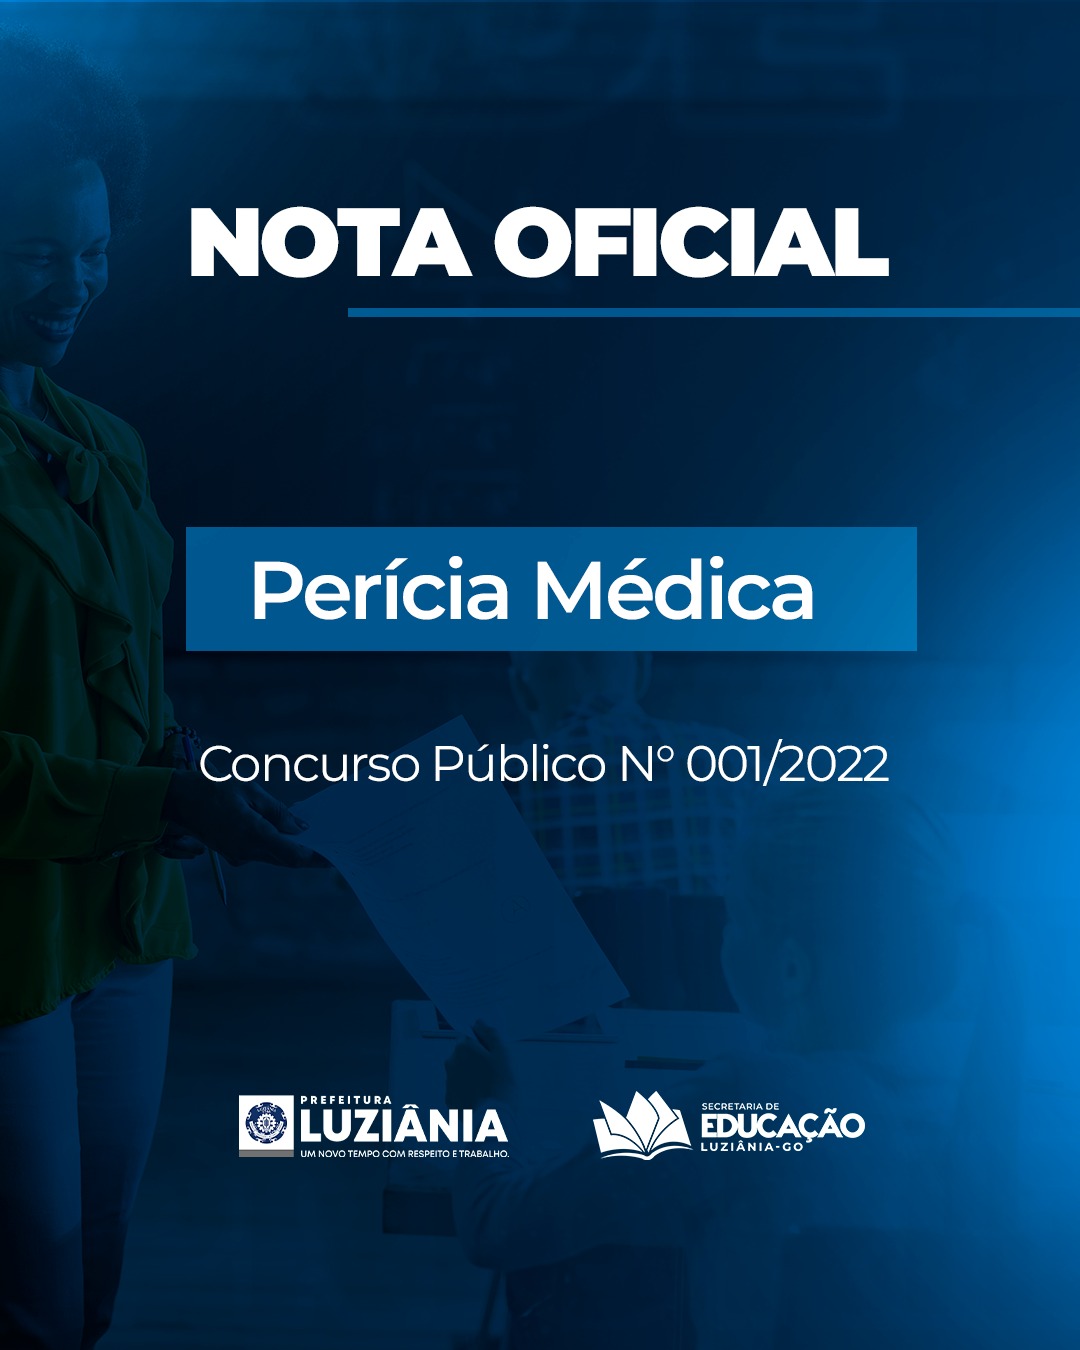 Nota Oficial: Agendamento Perícia Médica – Concurso Público Nº 001/2022